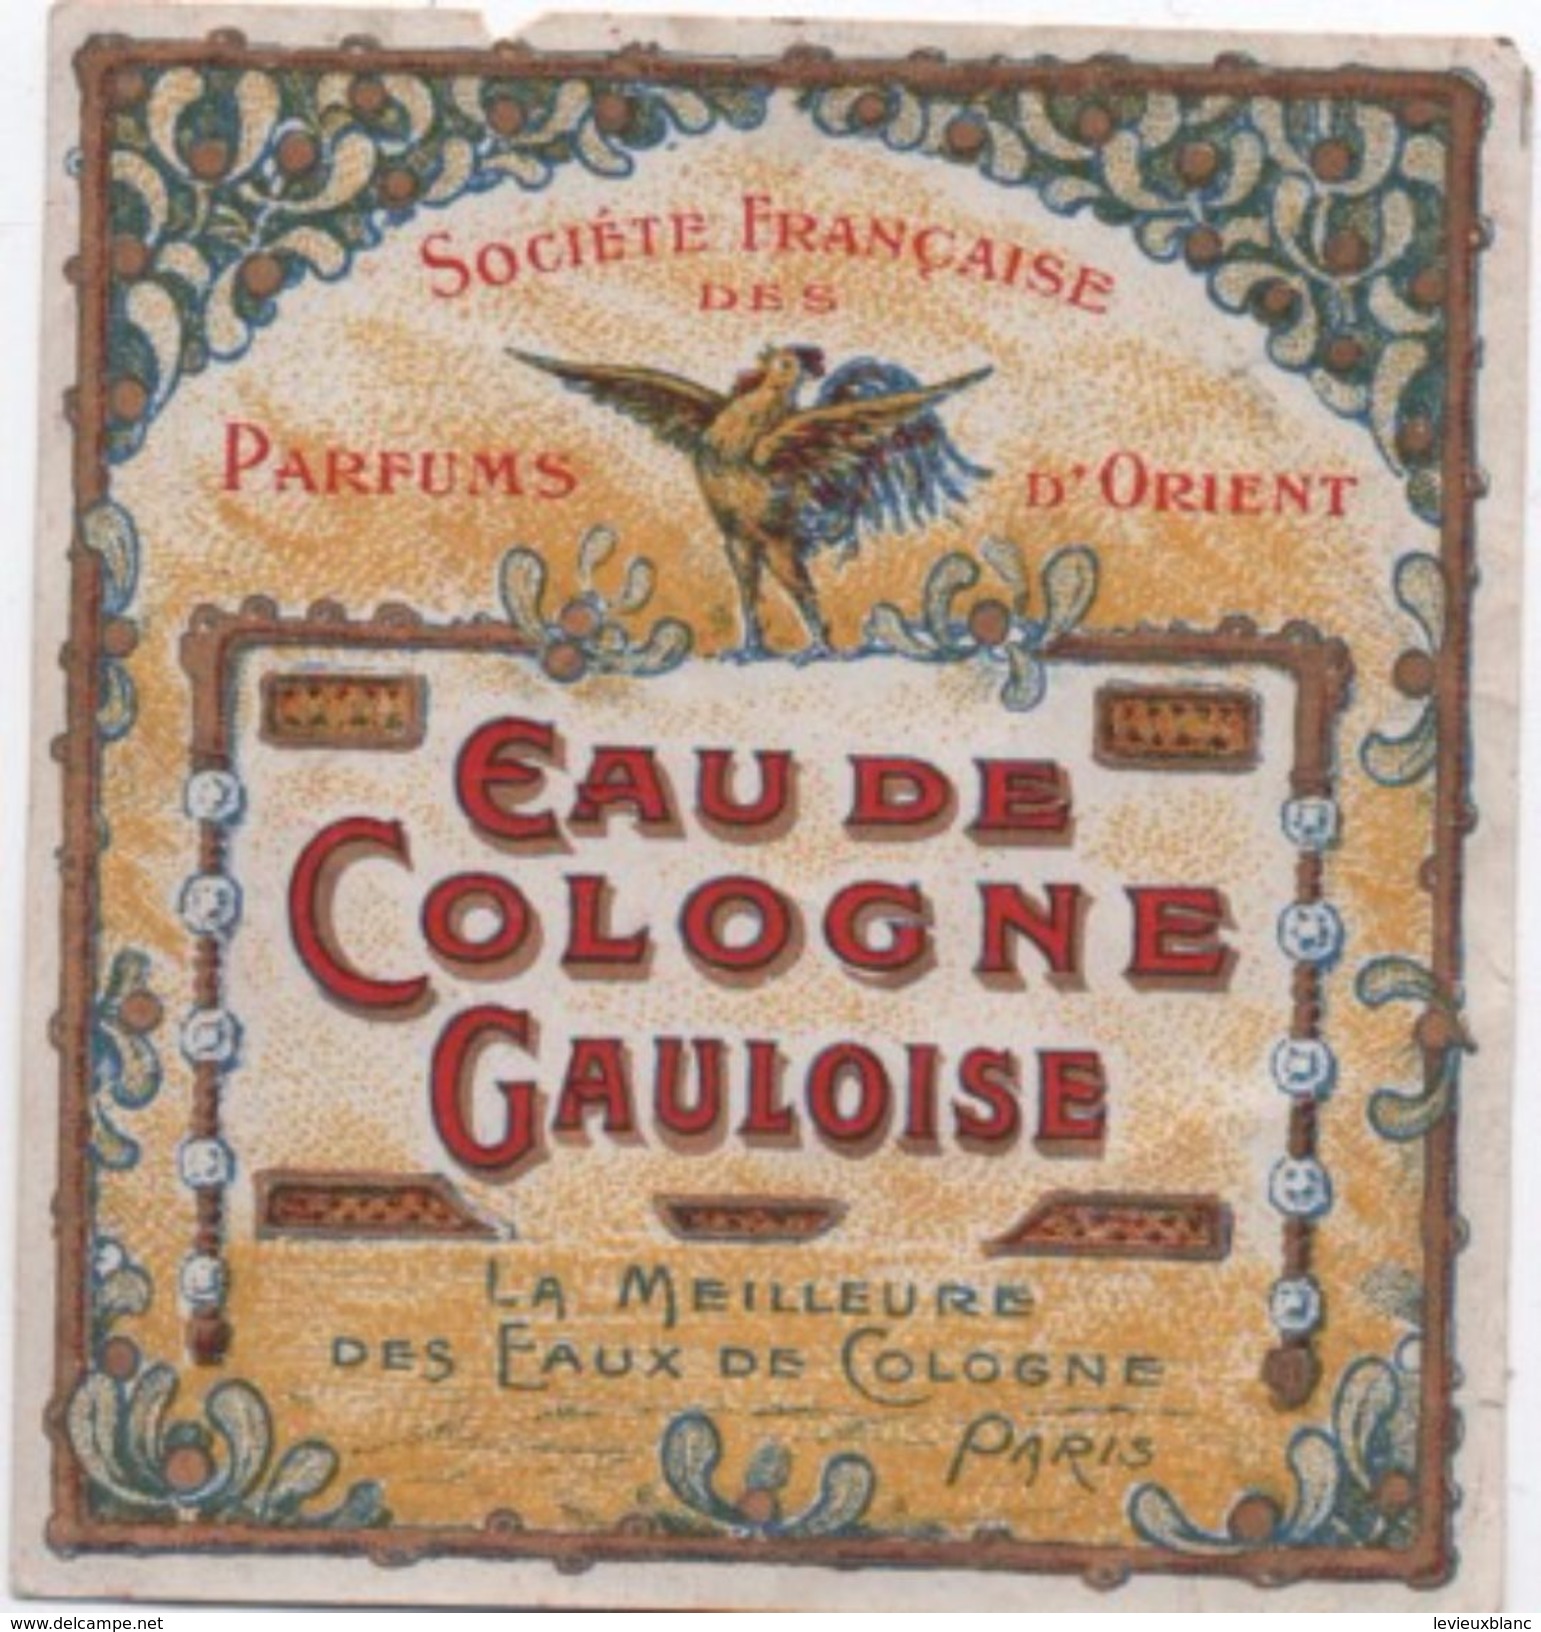 Etiquette/Eau De Cologne Gauloise /Société Française Des Parfums D'Orient/La Meilleure /PARIS//1920-1930   PARF102 - Etiquettes